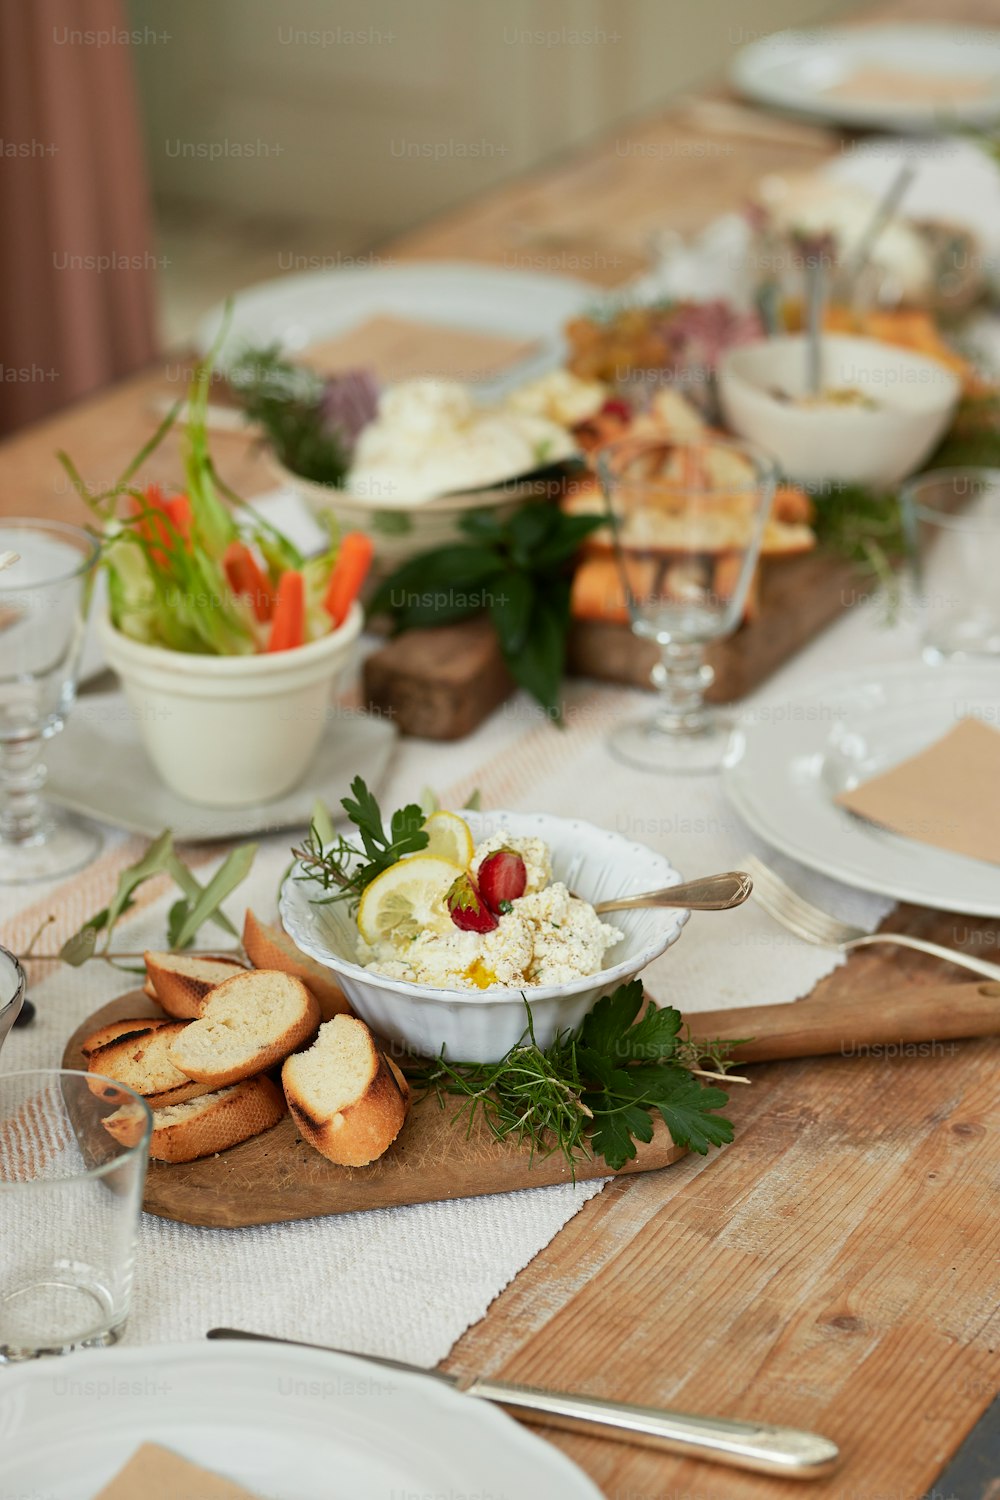 접시와 음식이 담긴 그릇이 놓인 나무 테이블